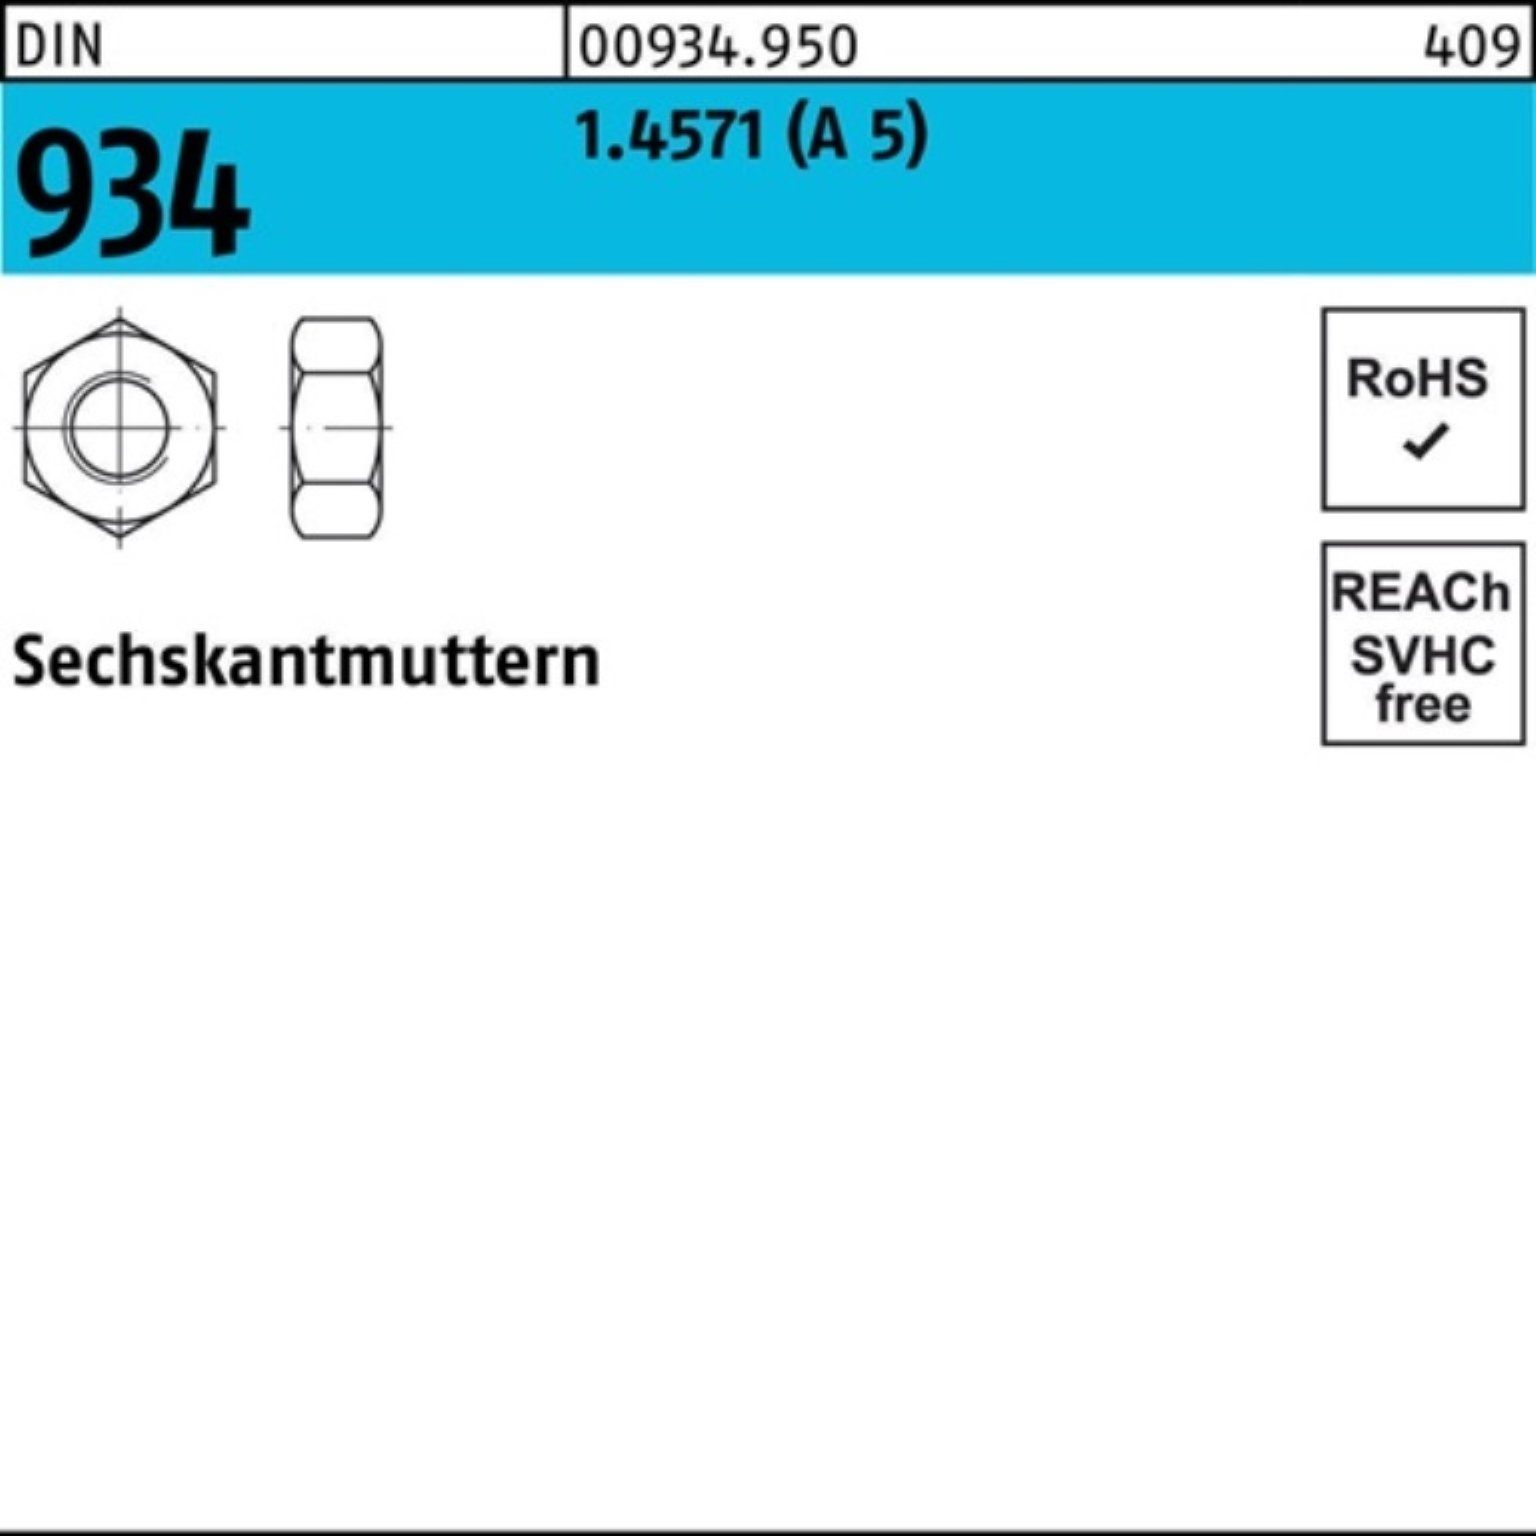 Reyher Muttern Pack 934 A 25 934 (A 5 Stück 100er M20 DIN Sechskantmutter DIN 1.4571